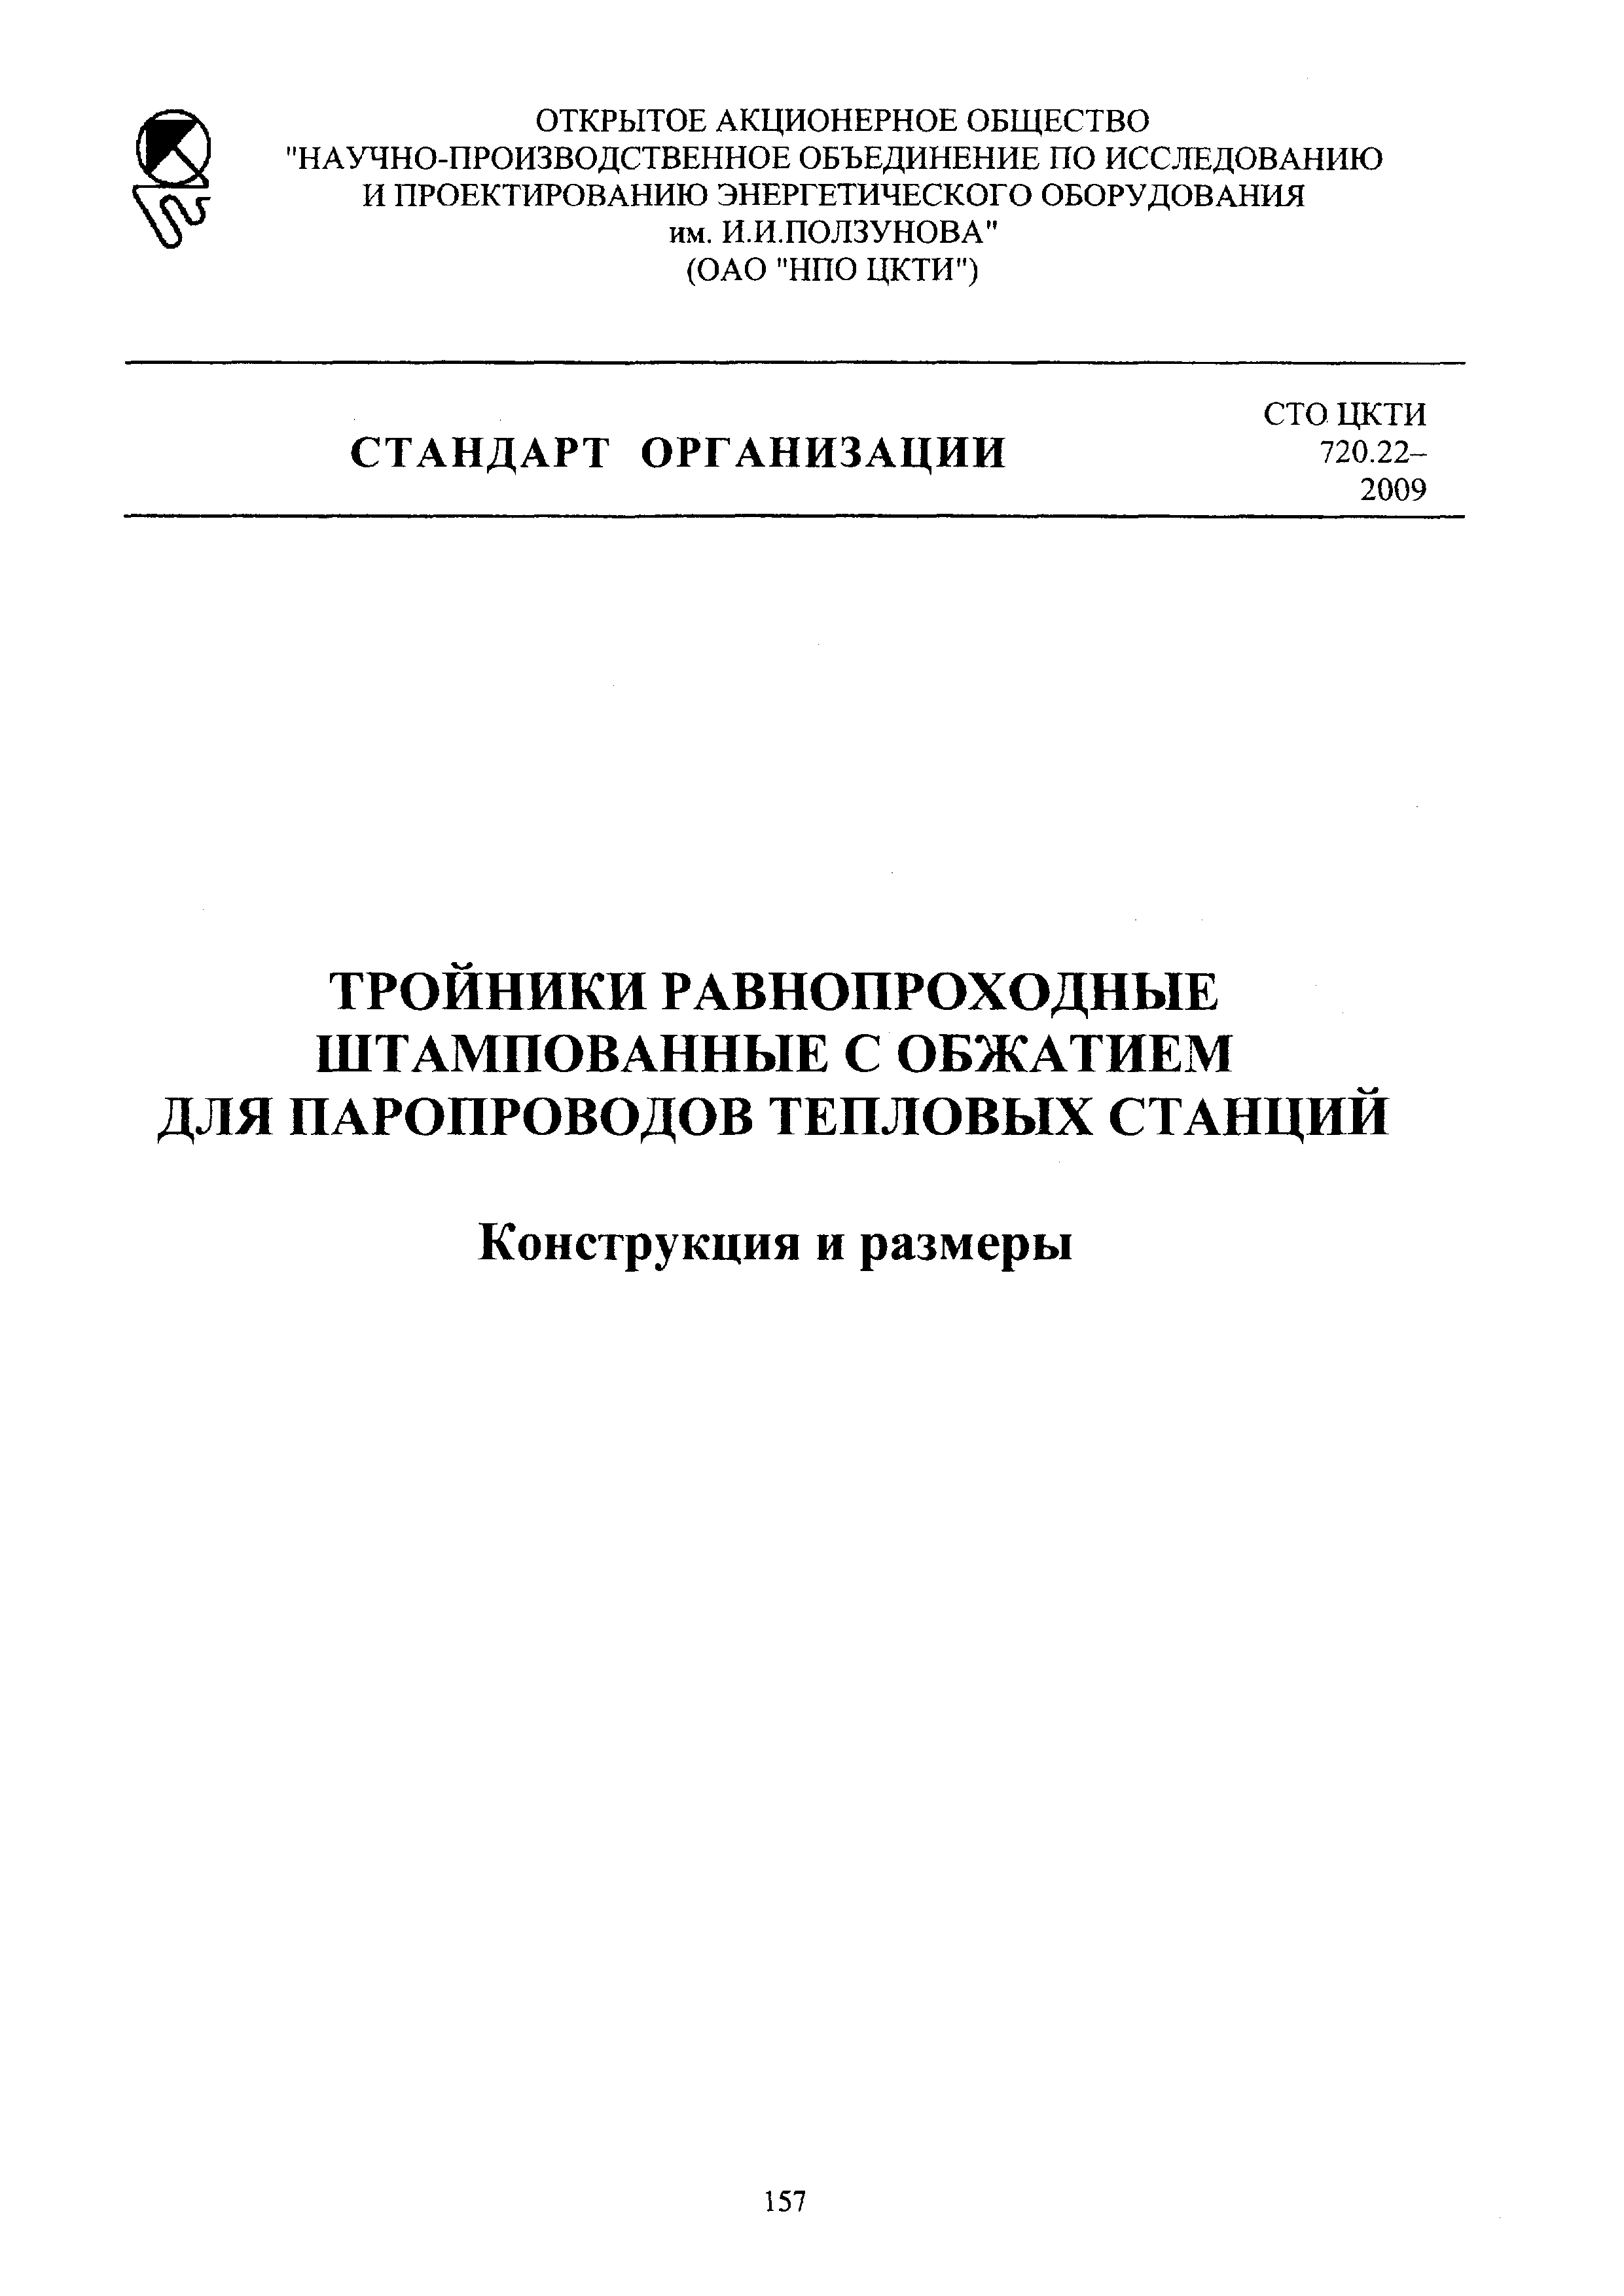 СТО ЦКТИ 720.22-2009